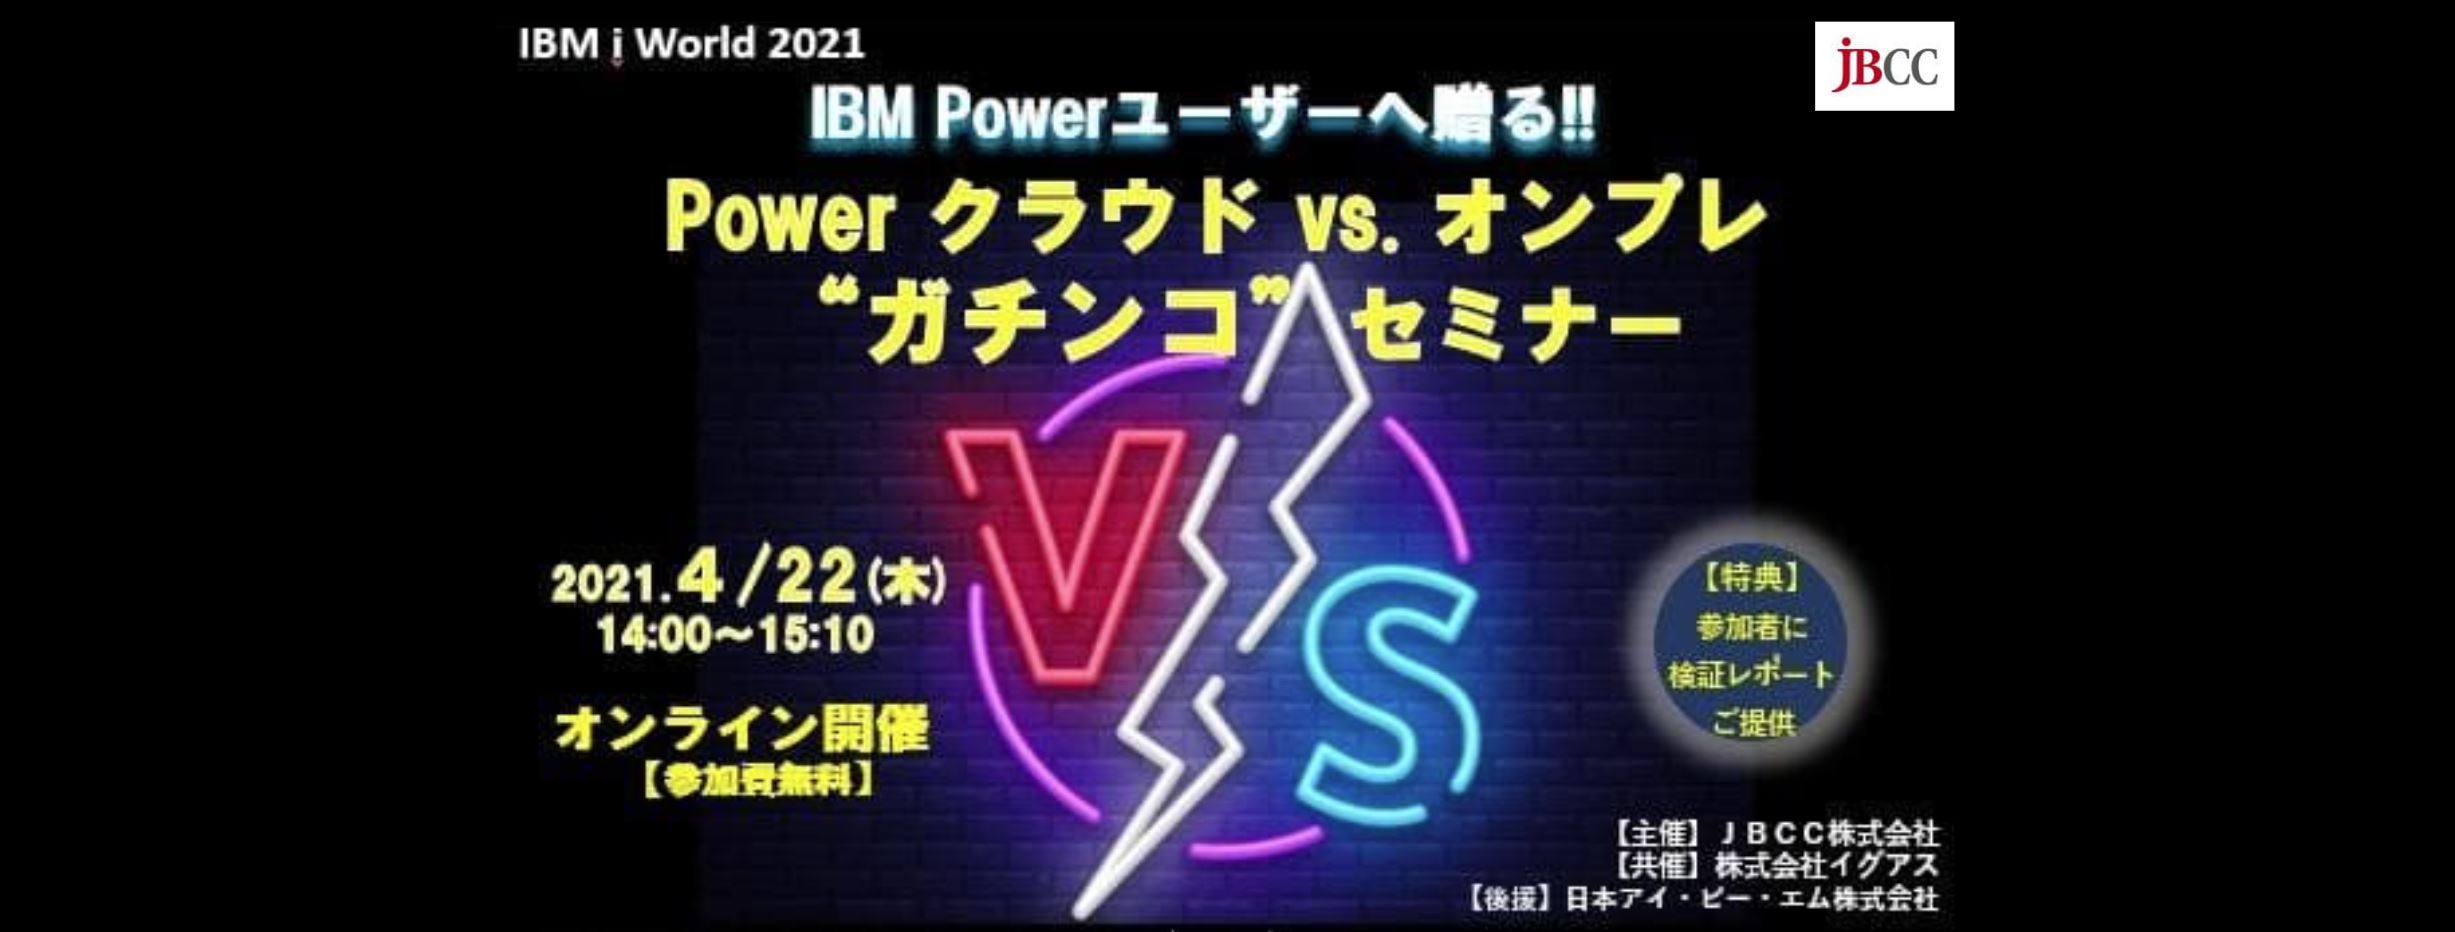  IBM Powerユーザーへ贈る!!　Power クラウド vs. オンプレ　"ガチンコ"セミナー 